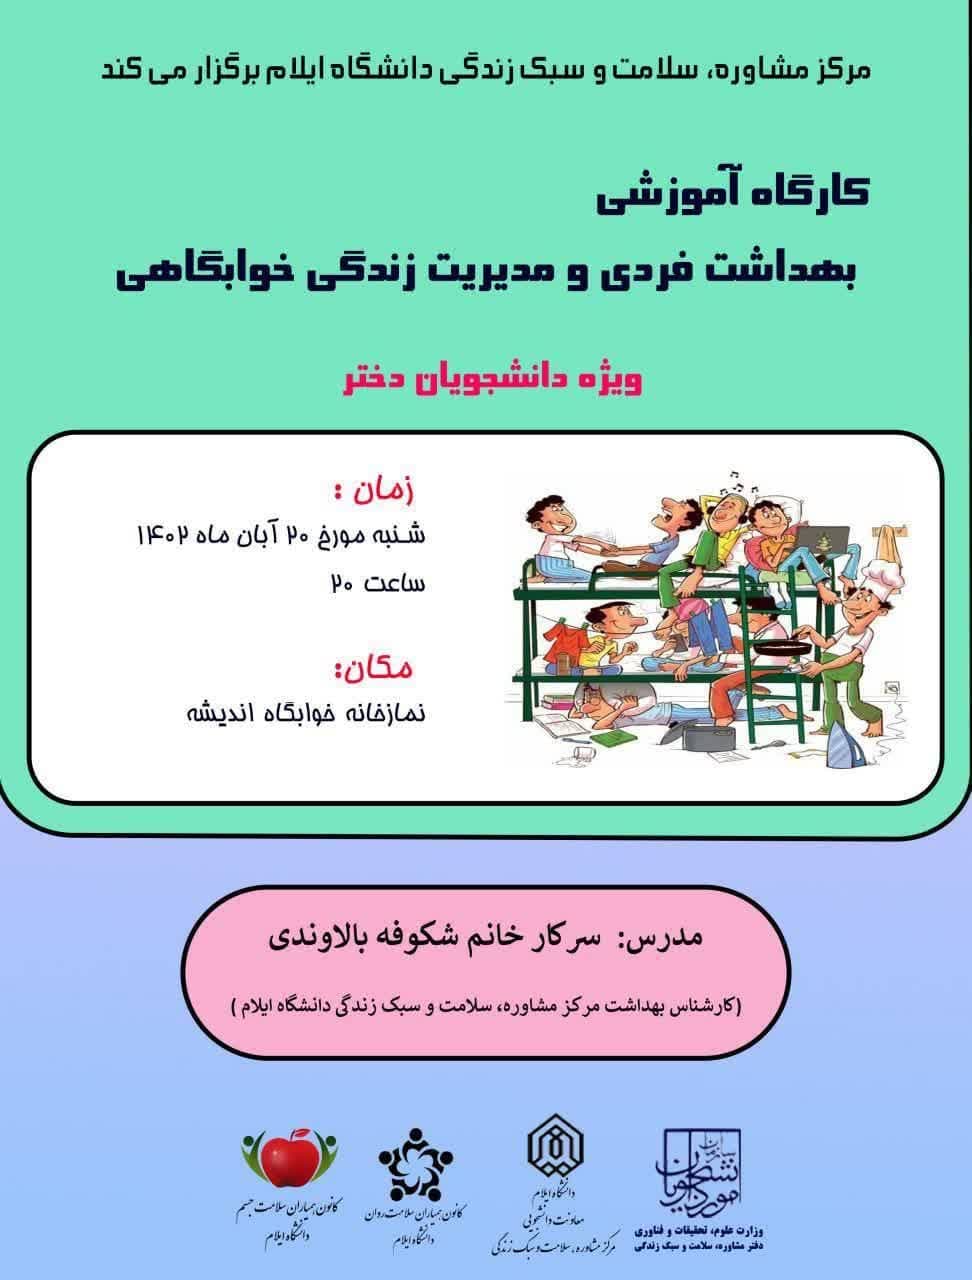 اطلاعيه برگزاري کارگاه آموزشي بهداشت فردي و مديريت زندگي خوابگاهي